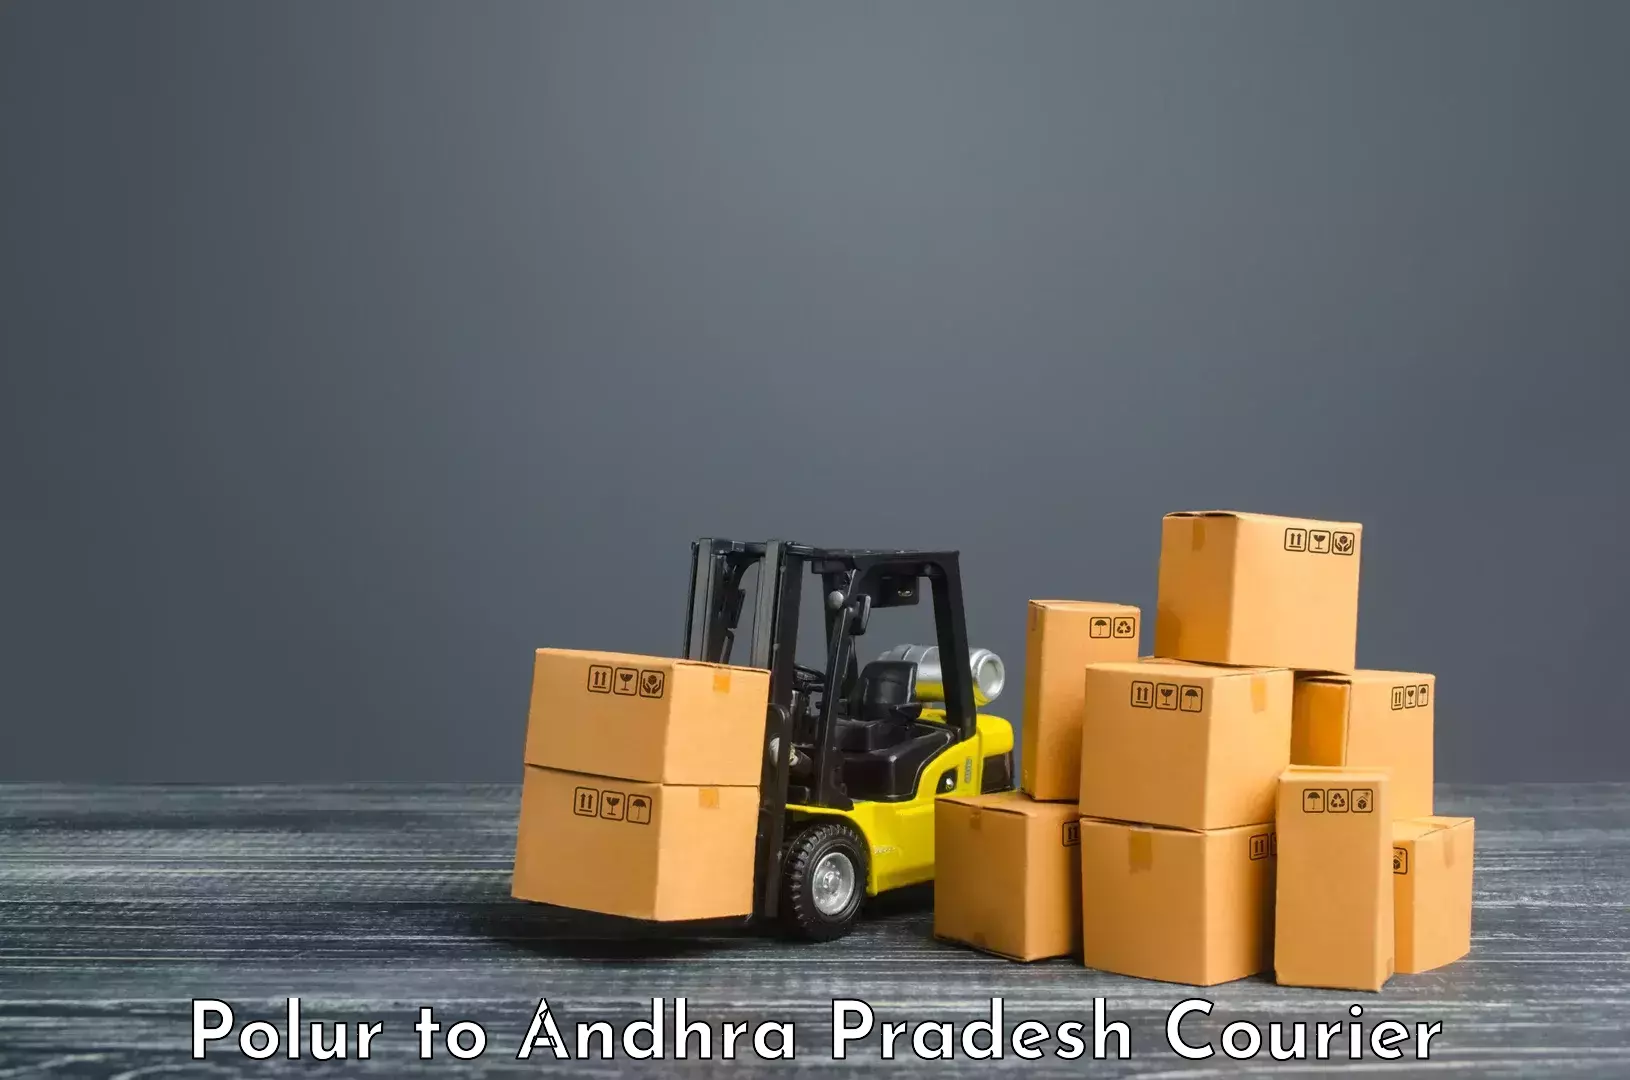 Cargo courier service in Polur to Ponnur